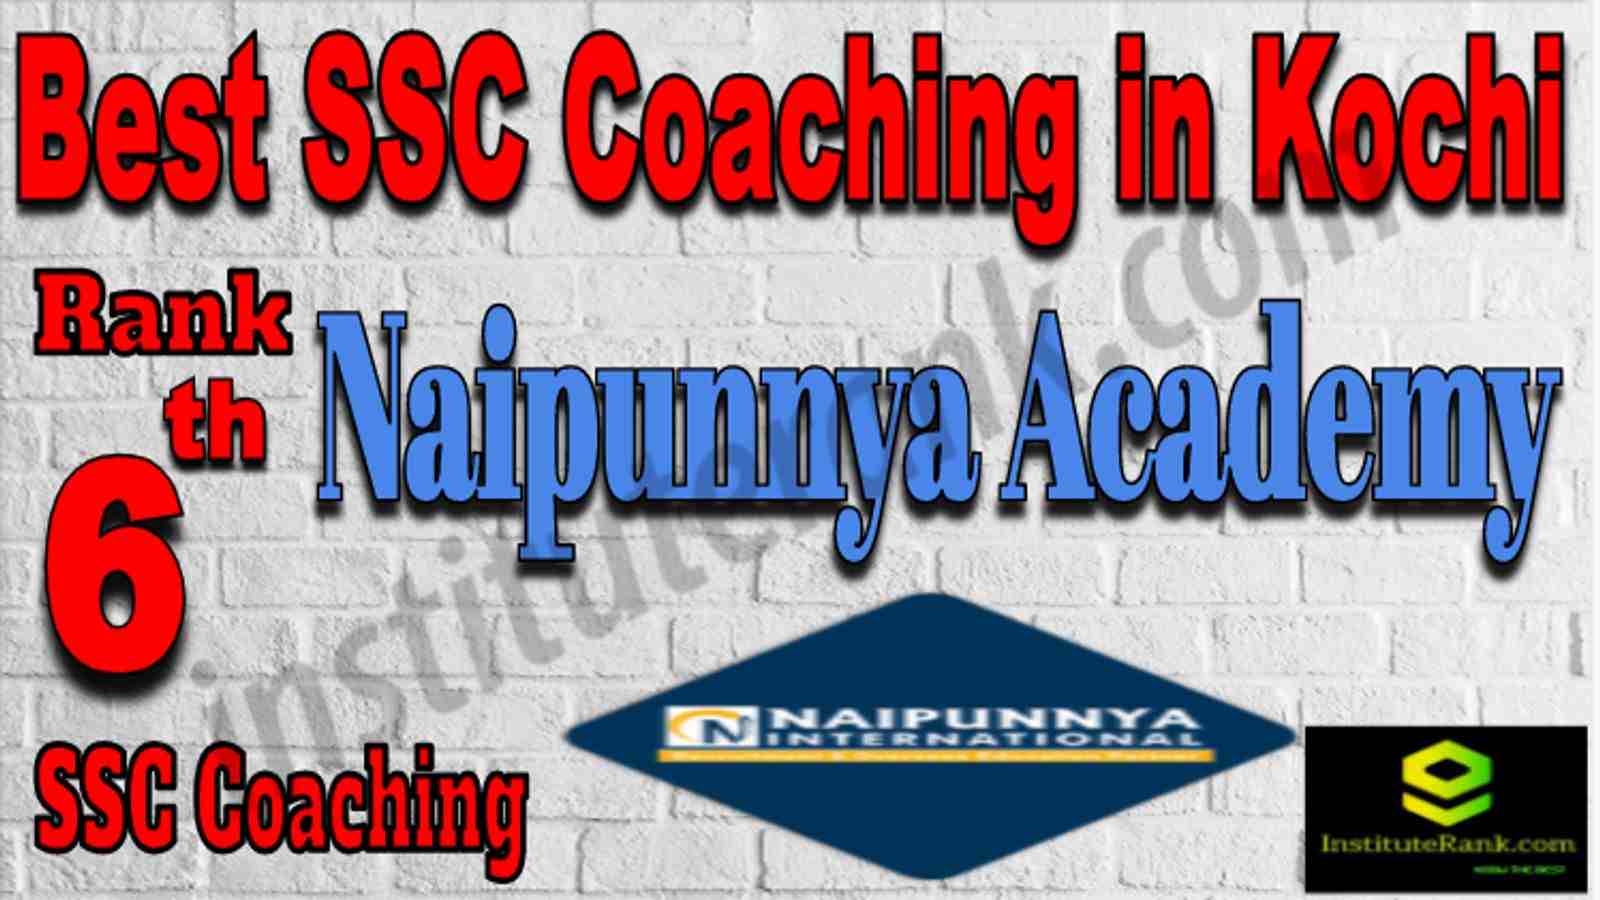 Rank 6 Best SSC Coaching in Kochi